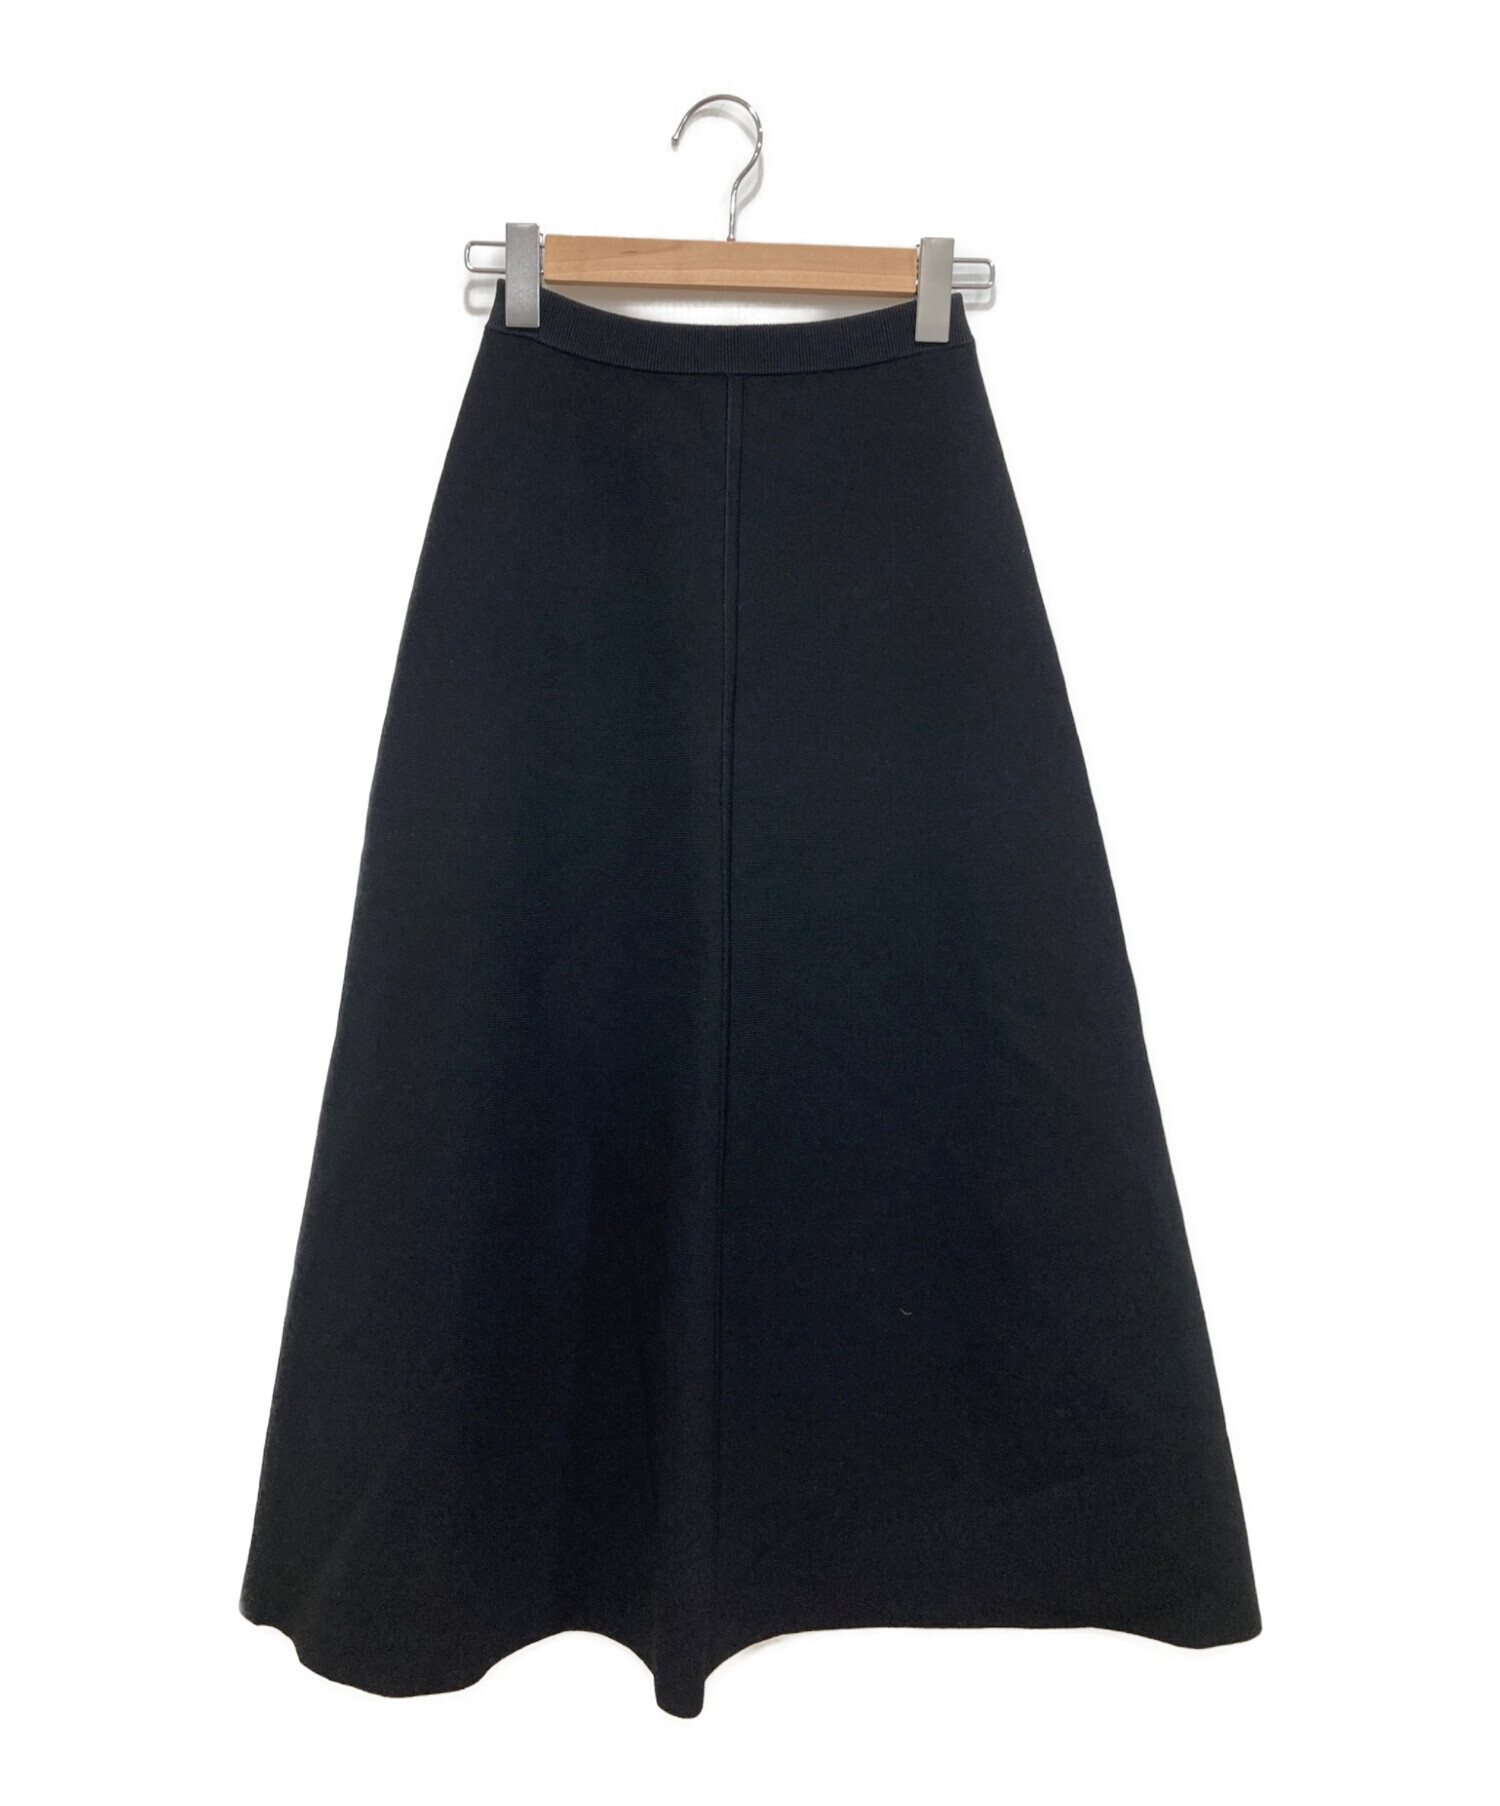 L'Appartement (アパルトモン) Knit Flare Skirt ブラック サイズ:34